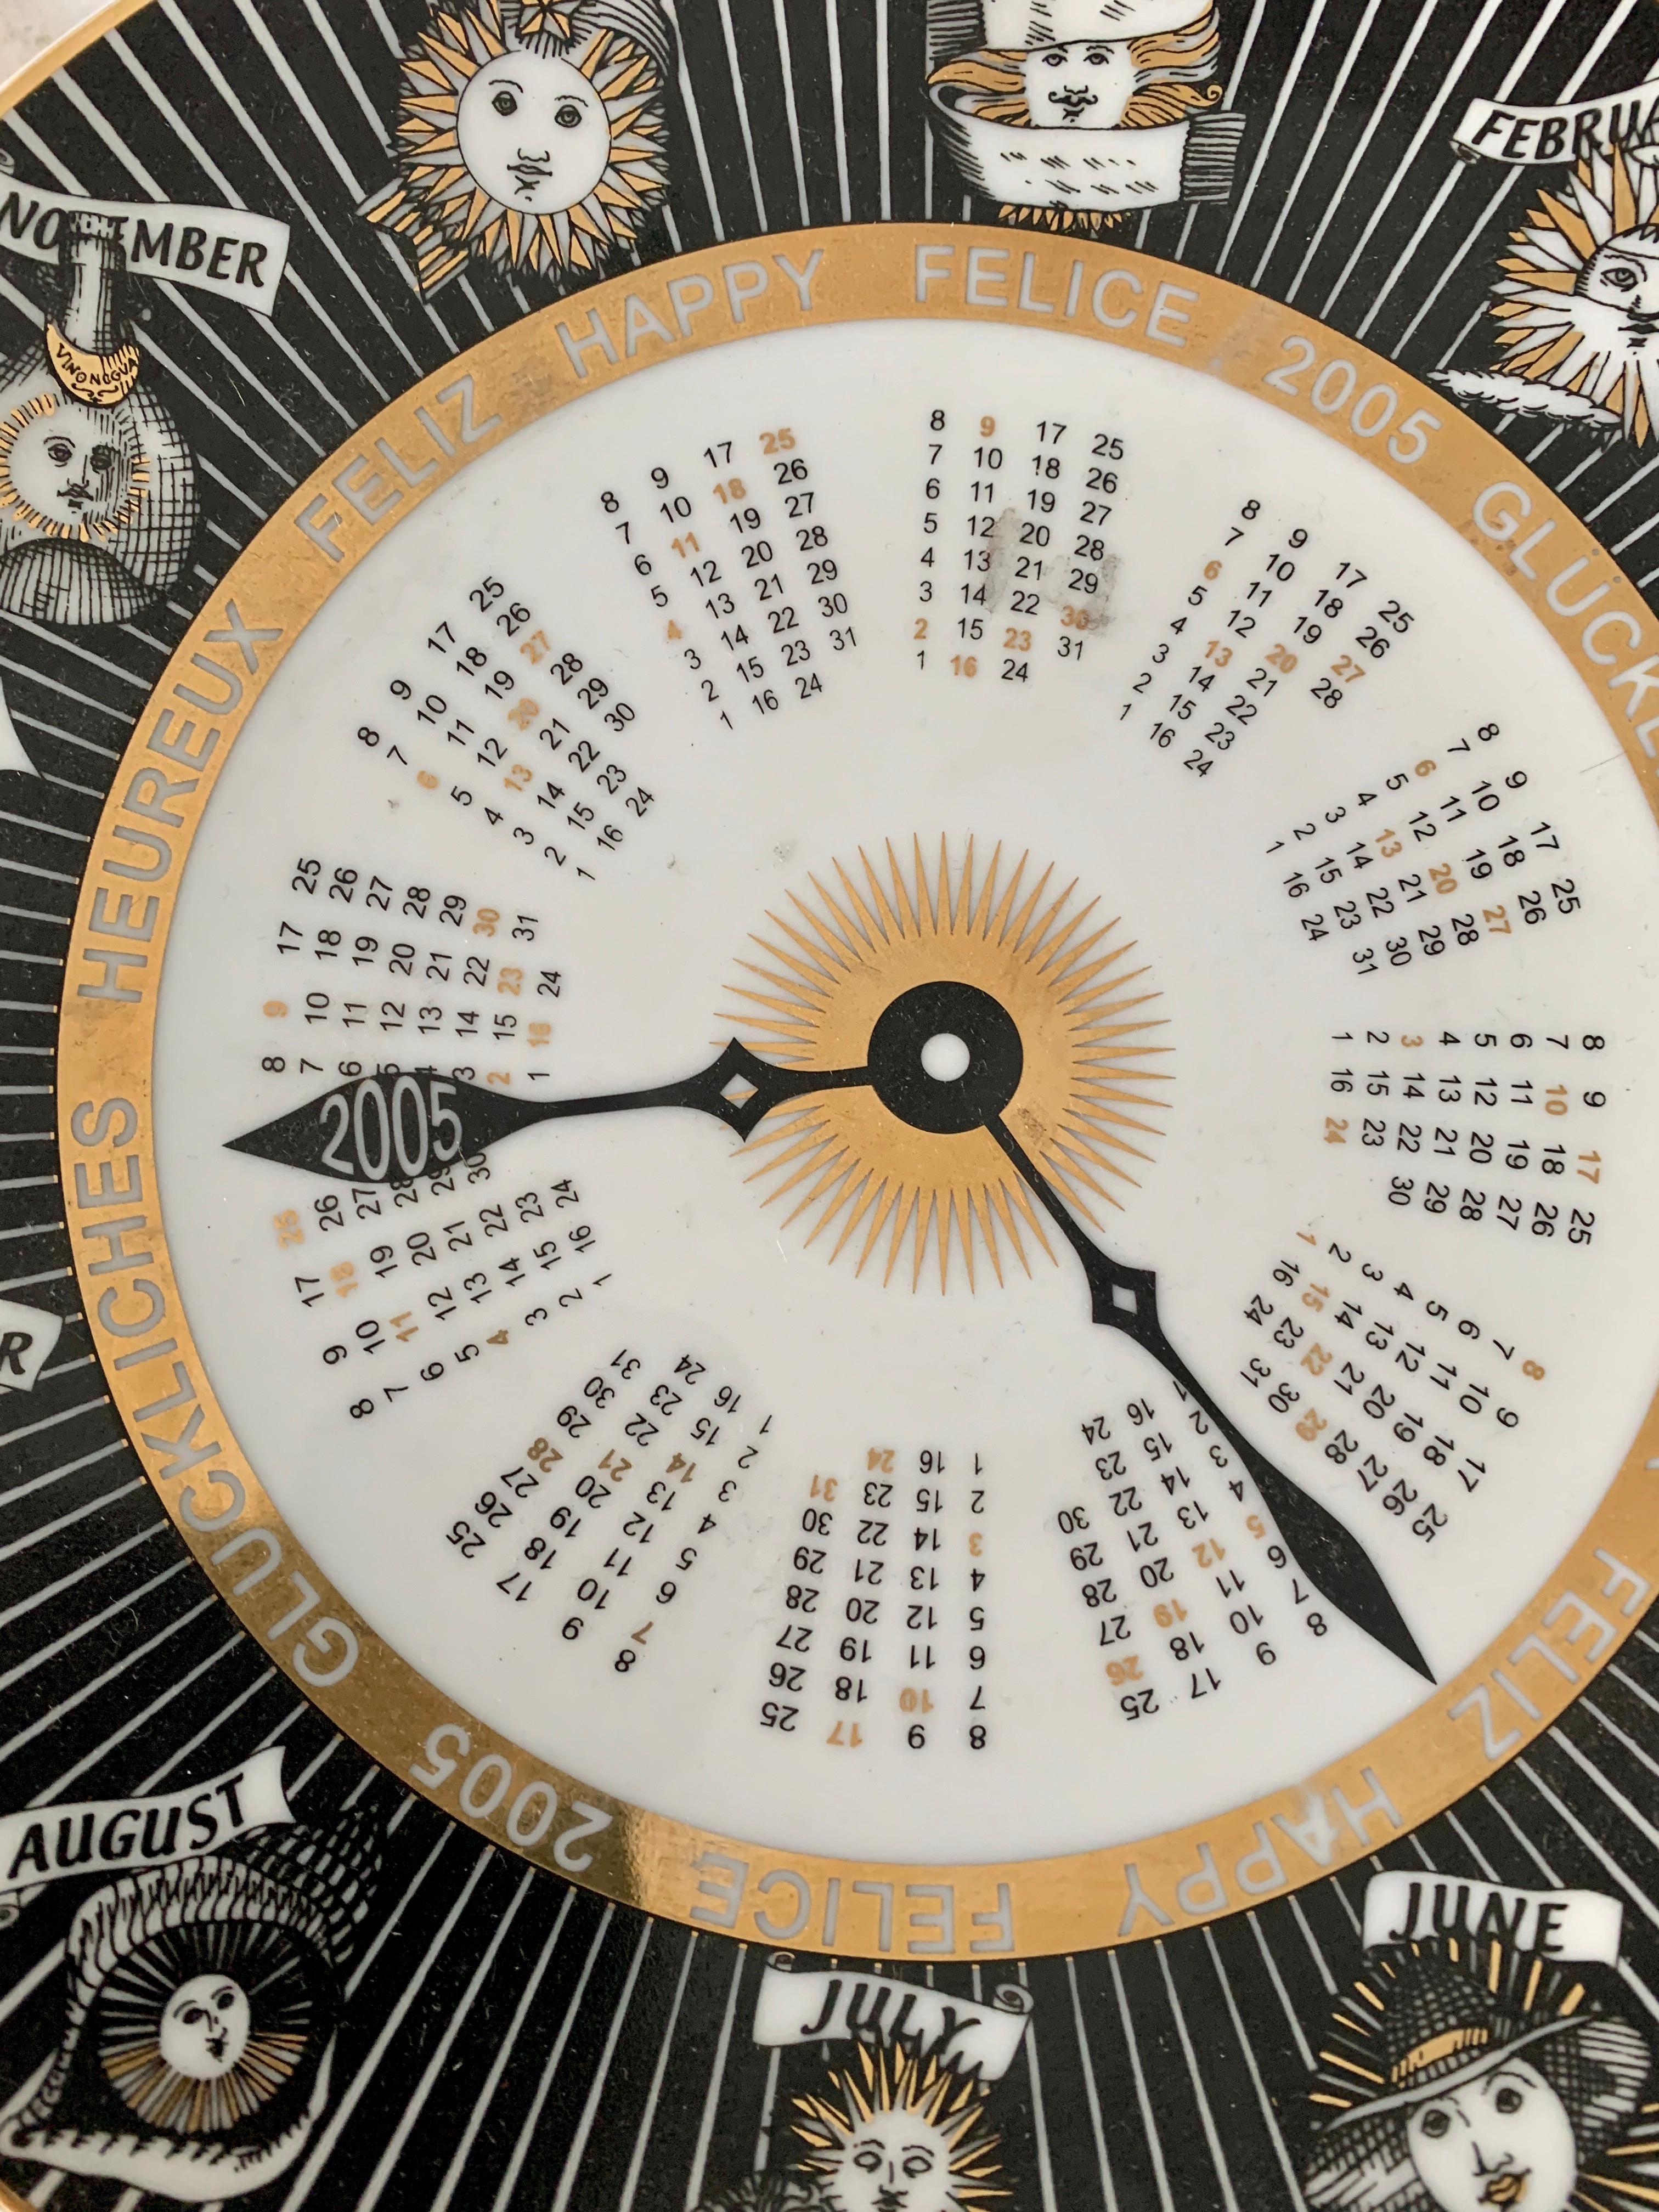 Paire de plaques astrologiques italiennes Fornasetti signées et numérotées - les plaques sont du classique Piero Fornasetti - Un merveilleux design, indiquant les 12 horoscopes et le calendrier. Chaque plaque est dotée de trous pré-percés pour la